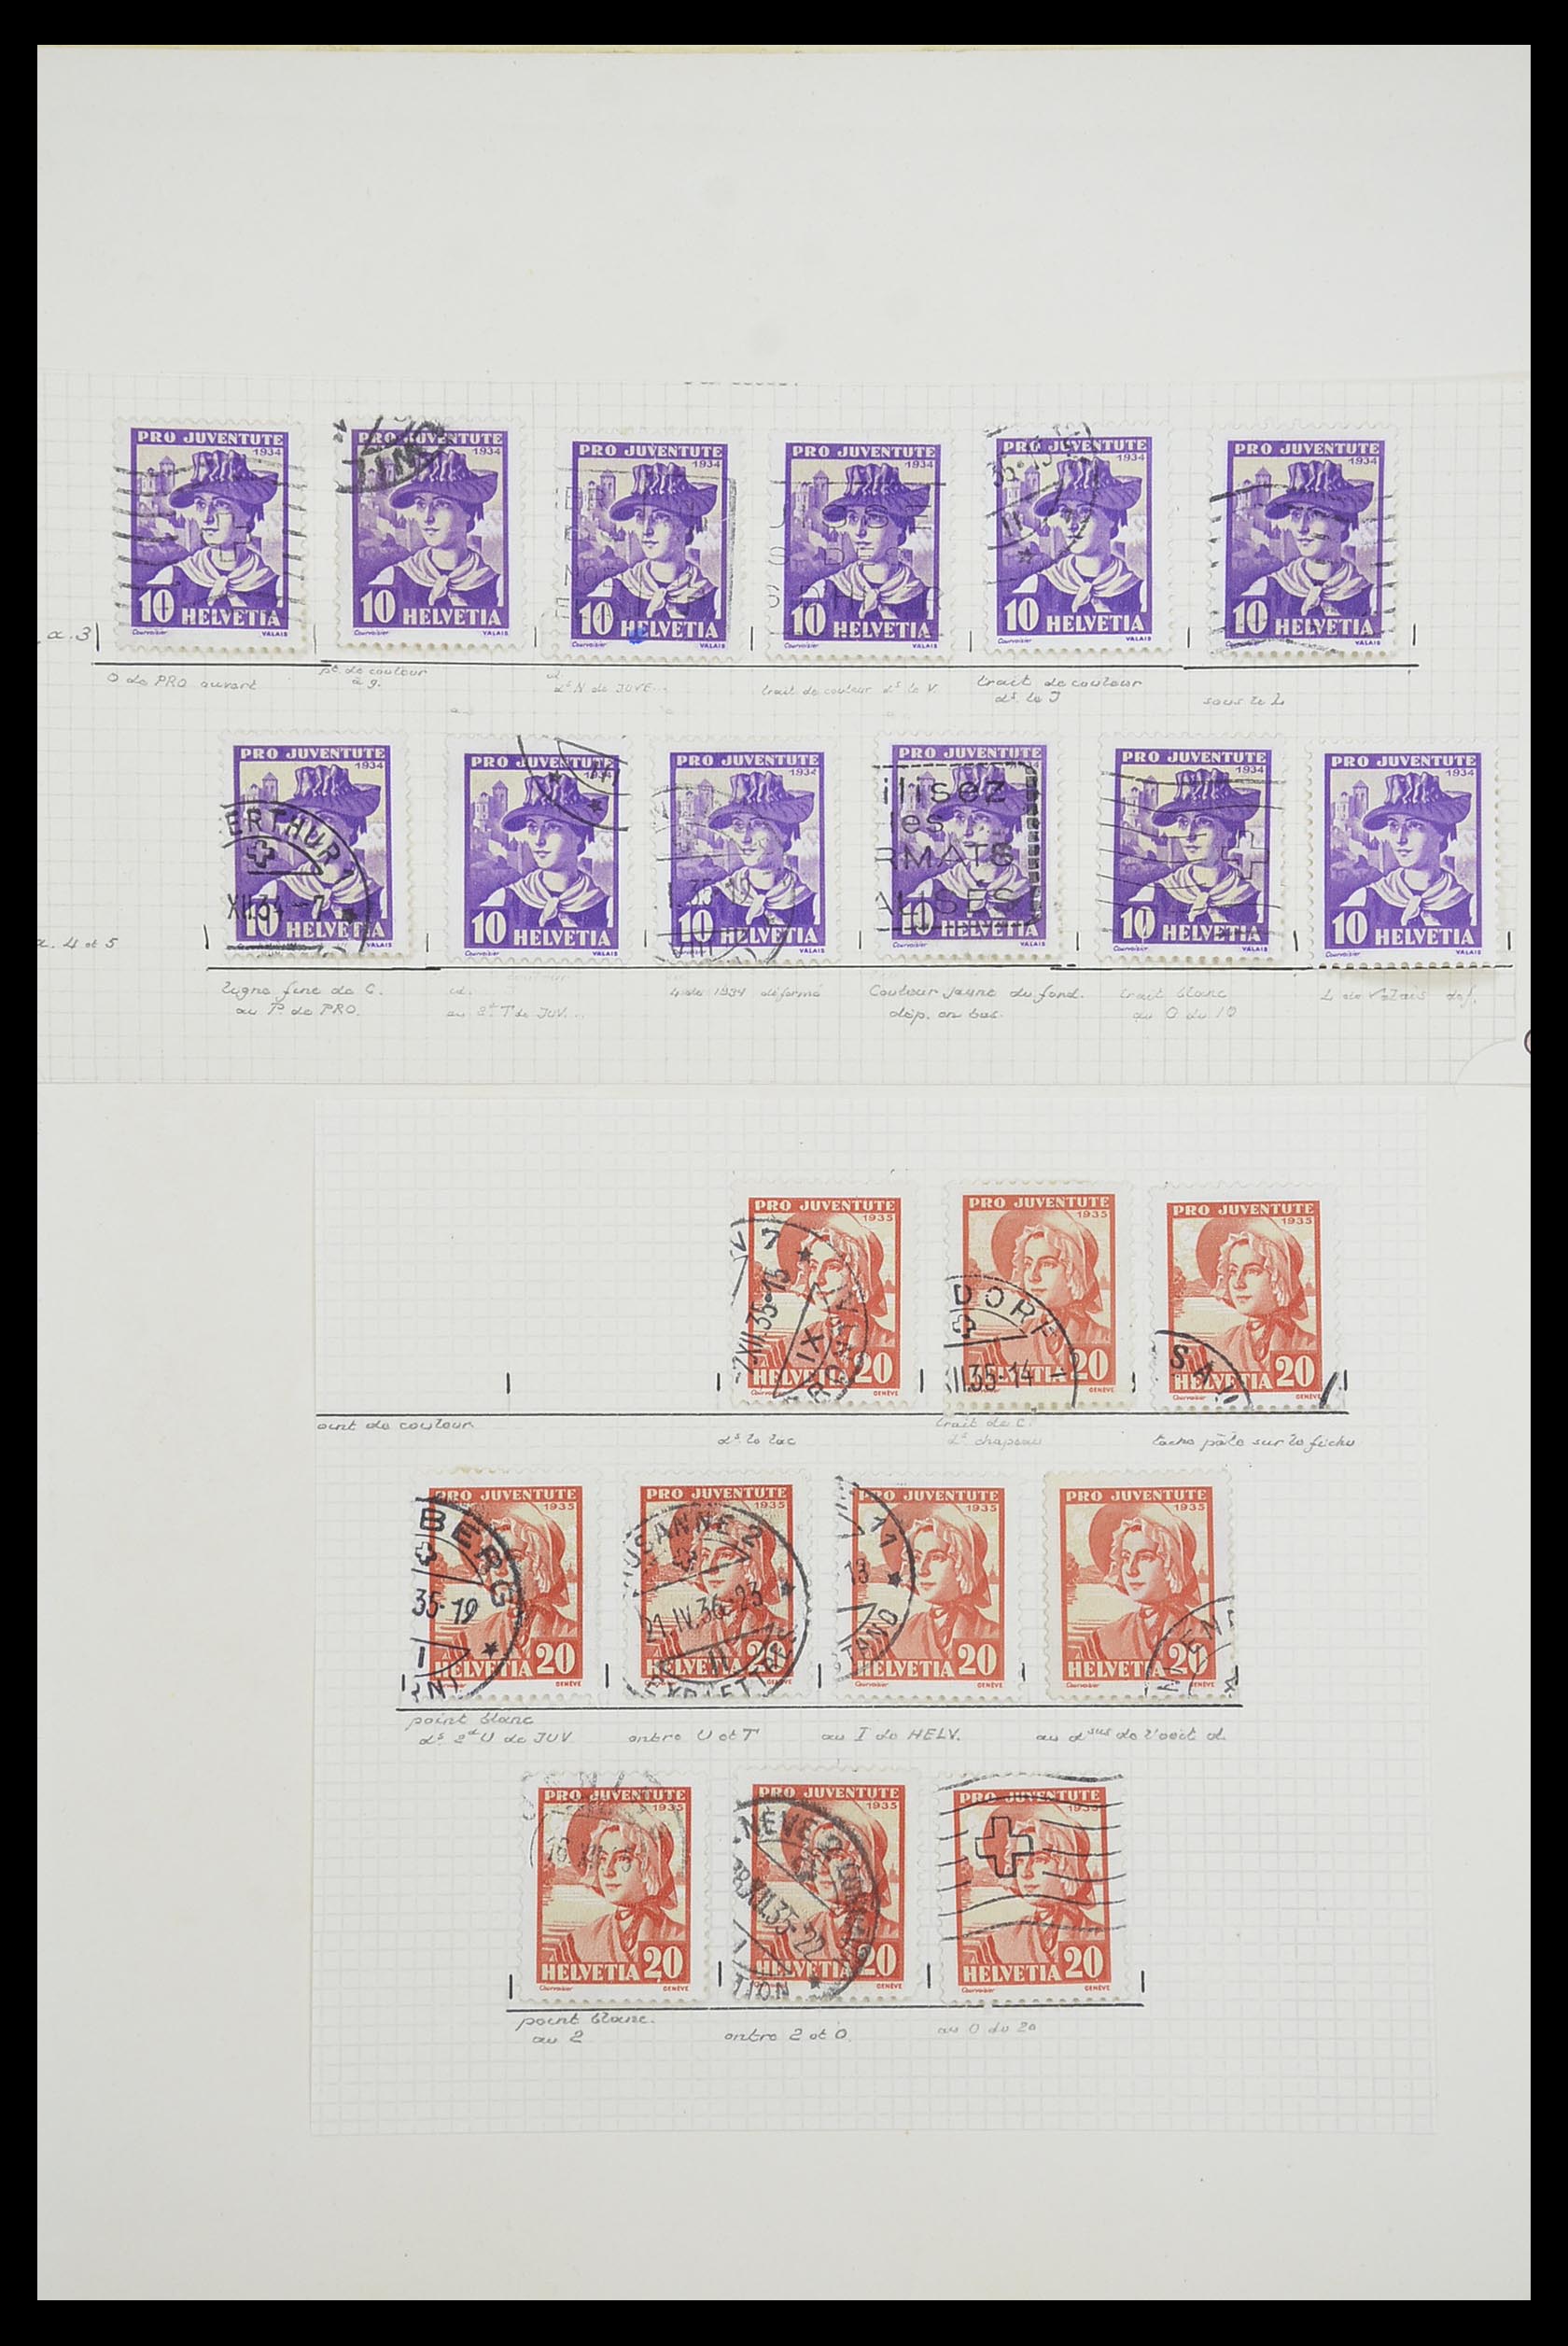 33926 051 - Postzegelverzameling 33926 Zwitserland uitzoekpartij 1850-1997.